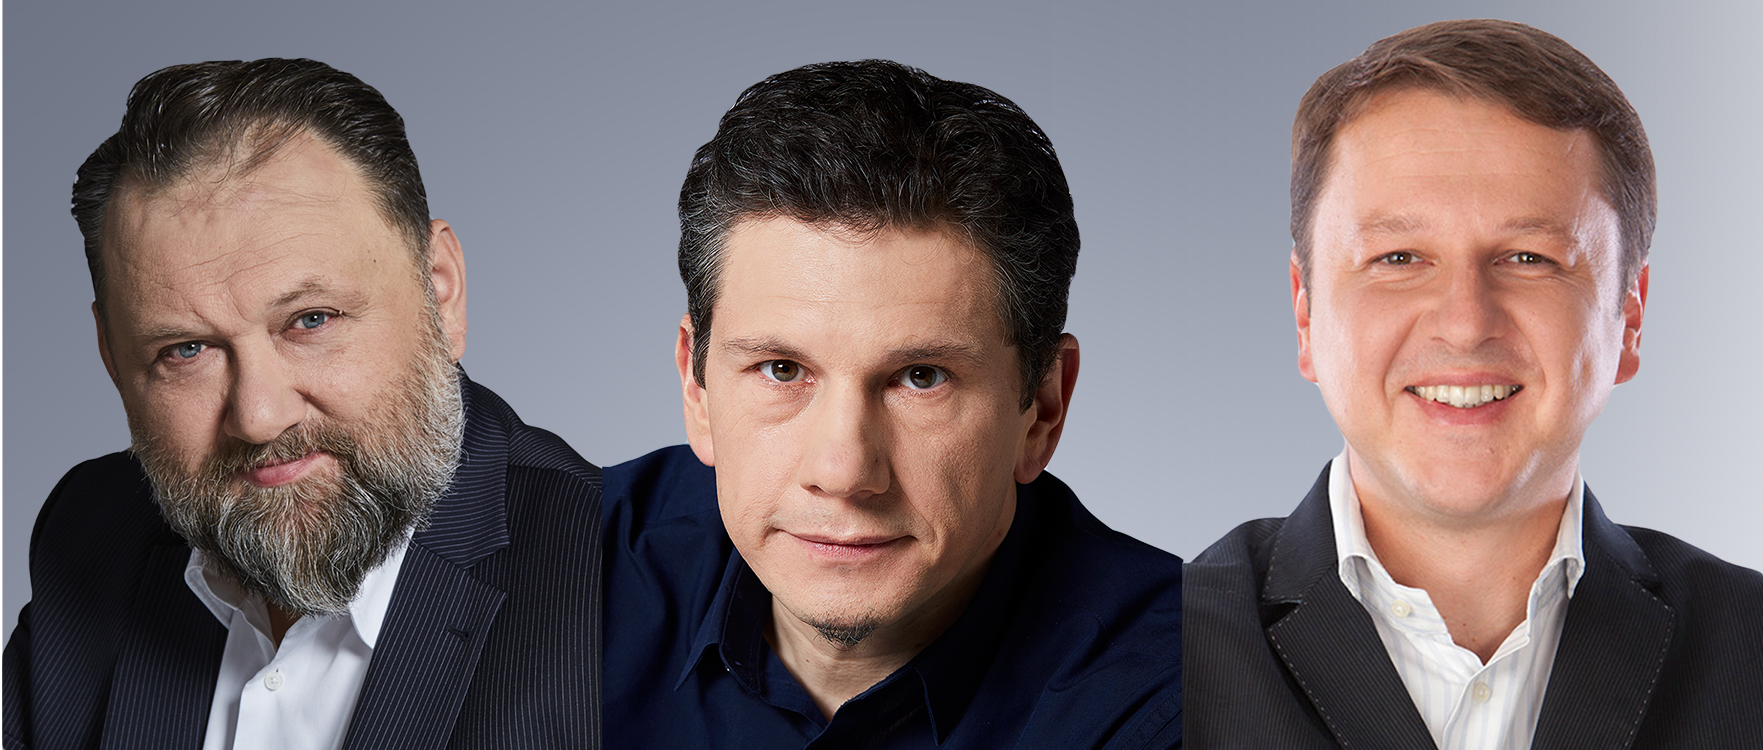 Członkowie zarządu Grupy Radiowej Agory wzmacniają Eurozet – Maciej Strzelecki został prezesem, a Adam Fijałkowski wiceprezesem Eurozetu